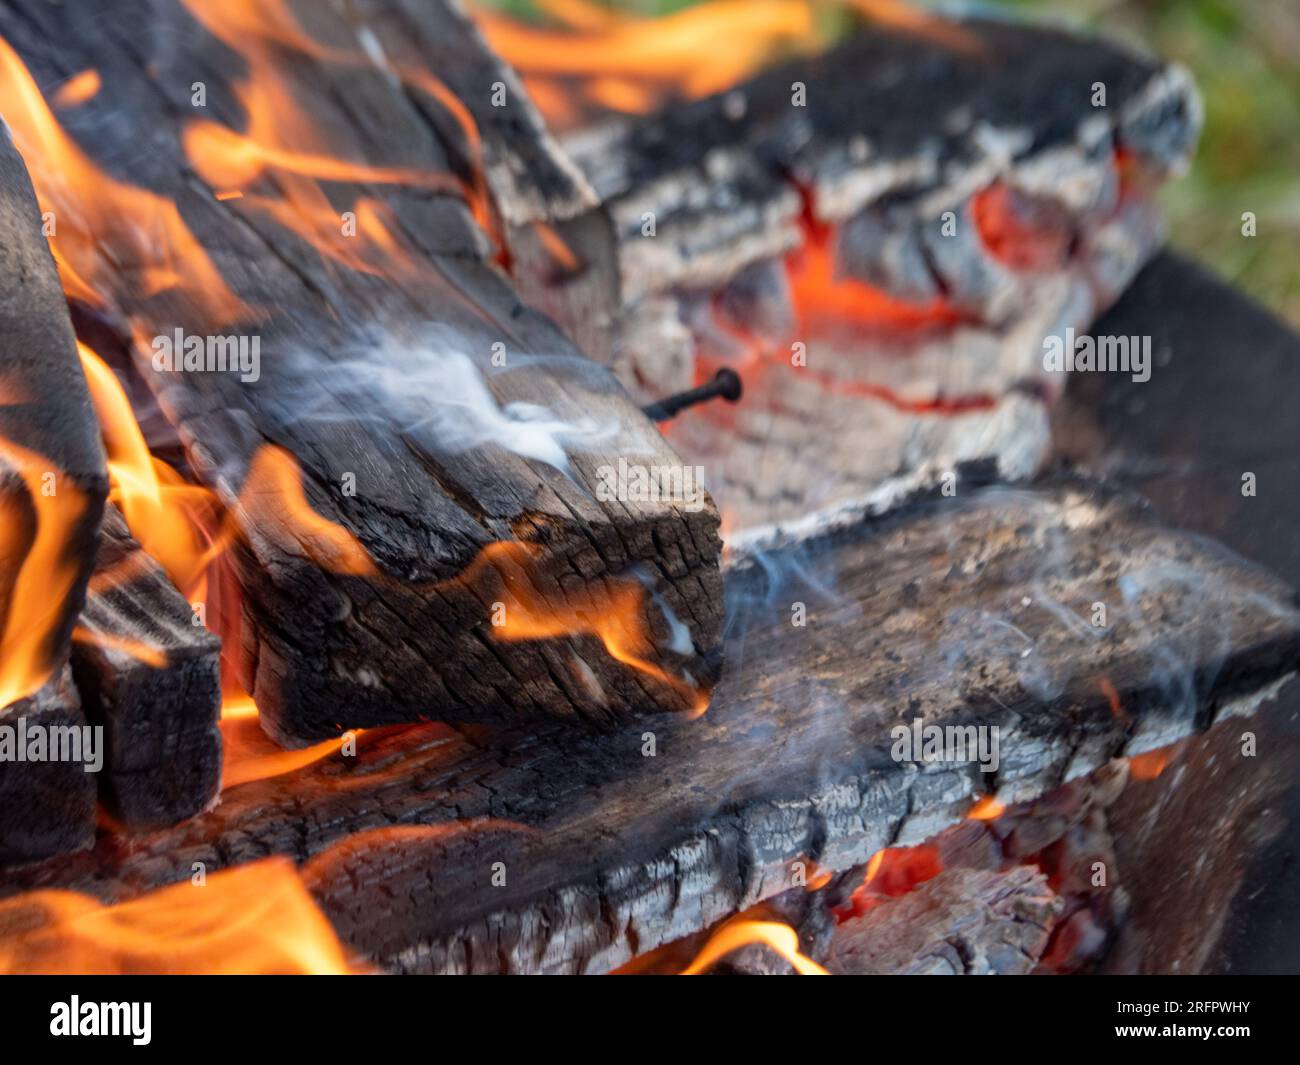 Feuerholz, das auf ein Feuer strahlt, orangefarbene Flammen, Rauch, heiße Glut Stockfoto